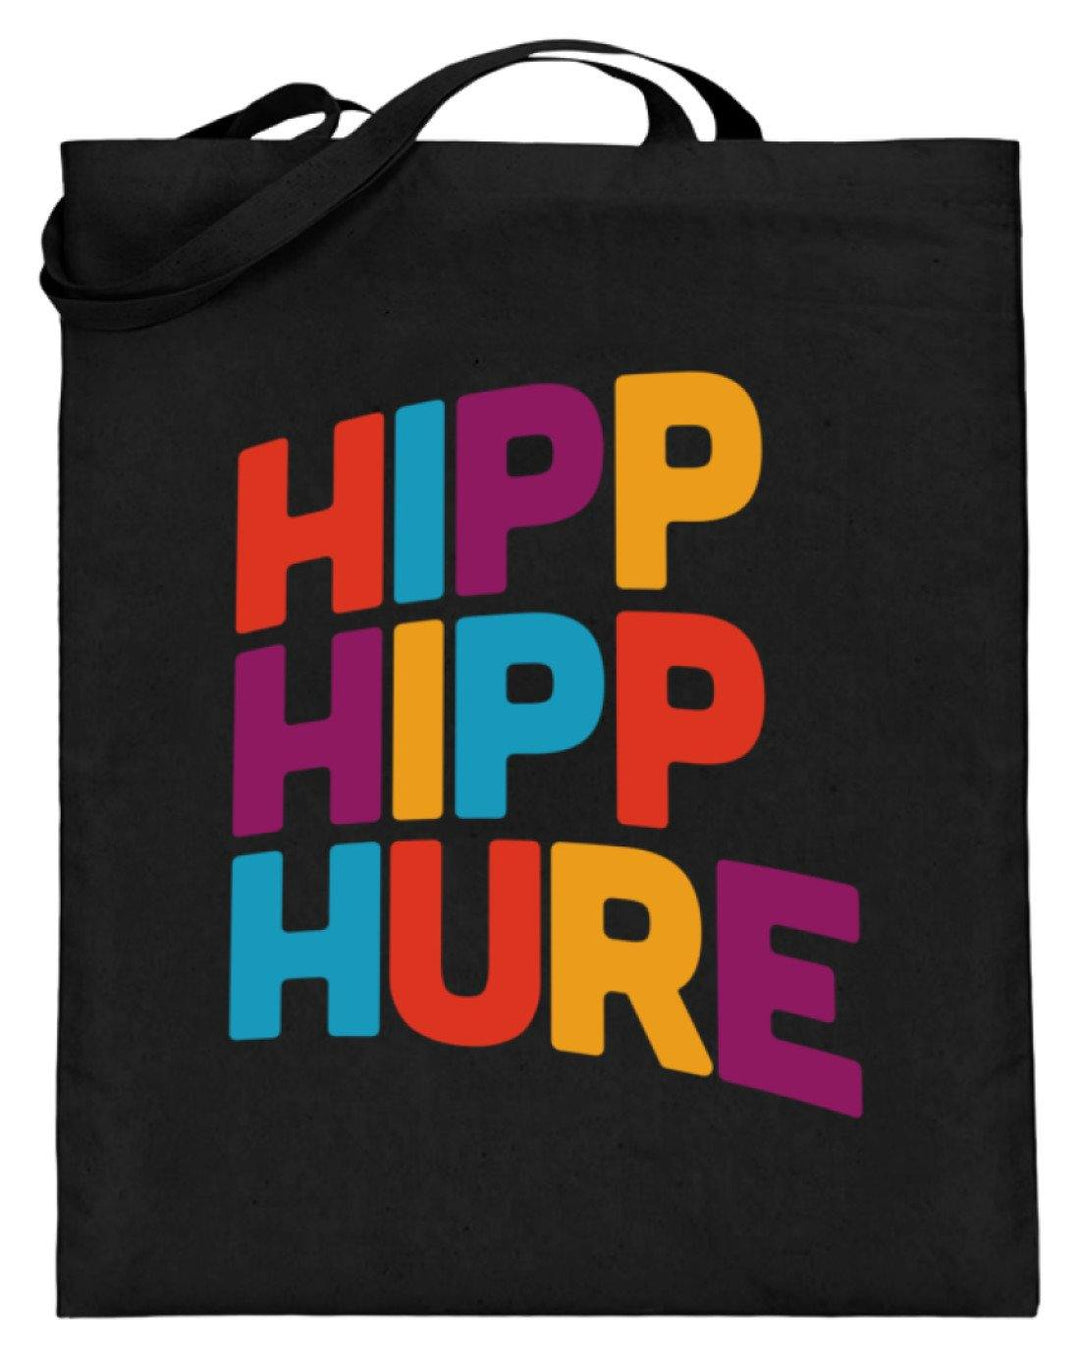 Hipp Hipp Hure- Words on Shirts  - Jutebeutel (mit langen Henkeln) - Words on Shirts Sag es mit dem Mittelfinger Shirts Hoodies Sweatshirt Taschen Gymsack Spruch Sprüche Statement